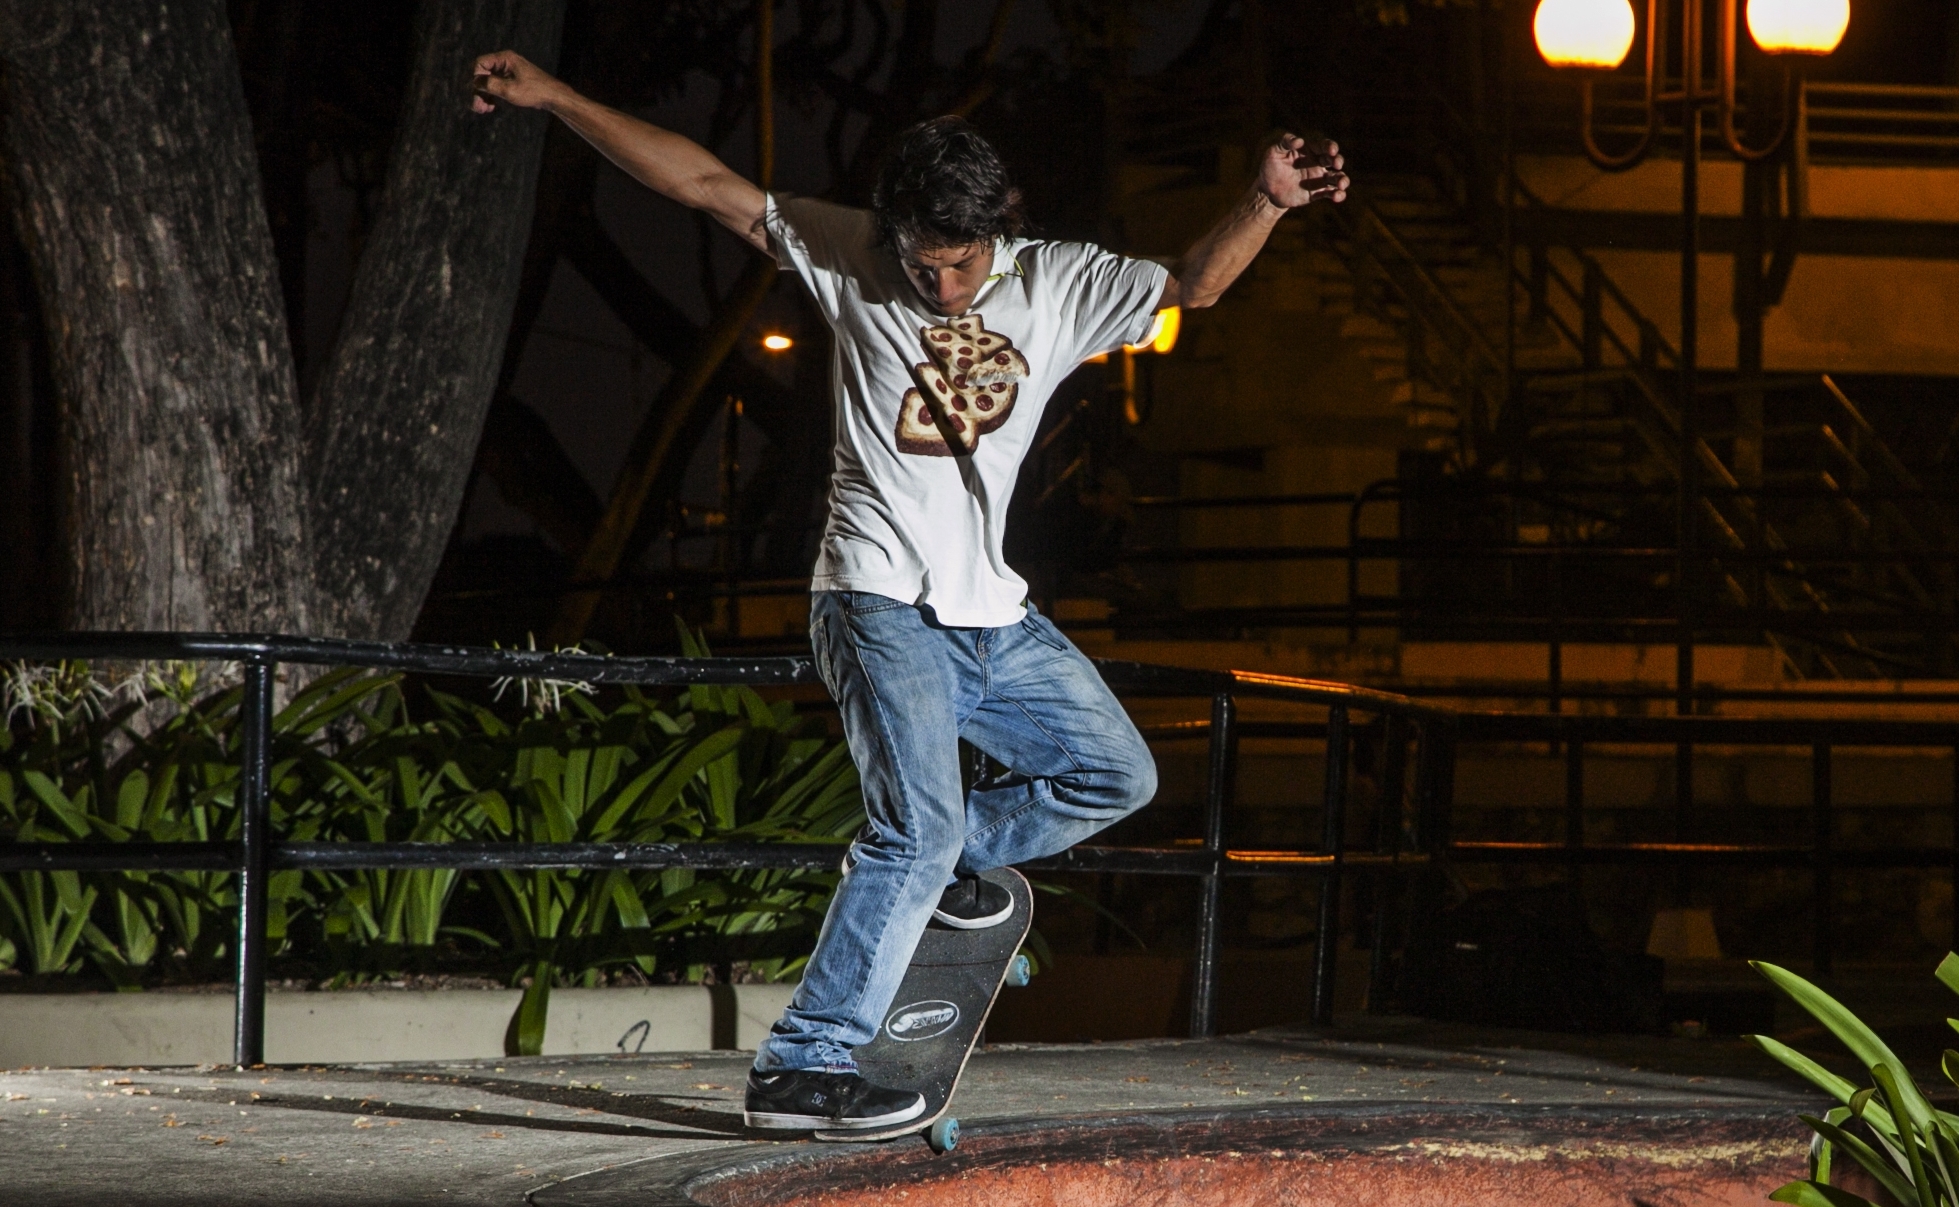 Una noche de patineta: ‘Pepo’ Castro en el filo curvo haciendo backside nosegrind, en el parque de la ciudadela Bolivariana, en Guayaquil. Foto: Enrique Pesantes / EL COMERCIO